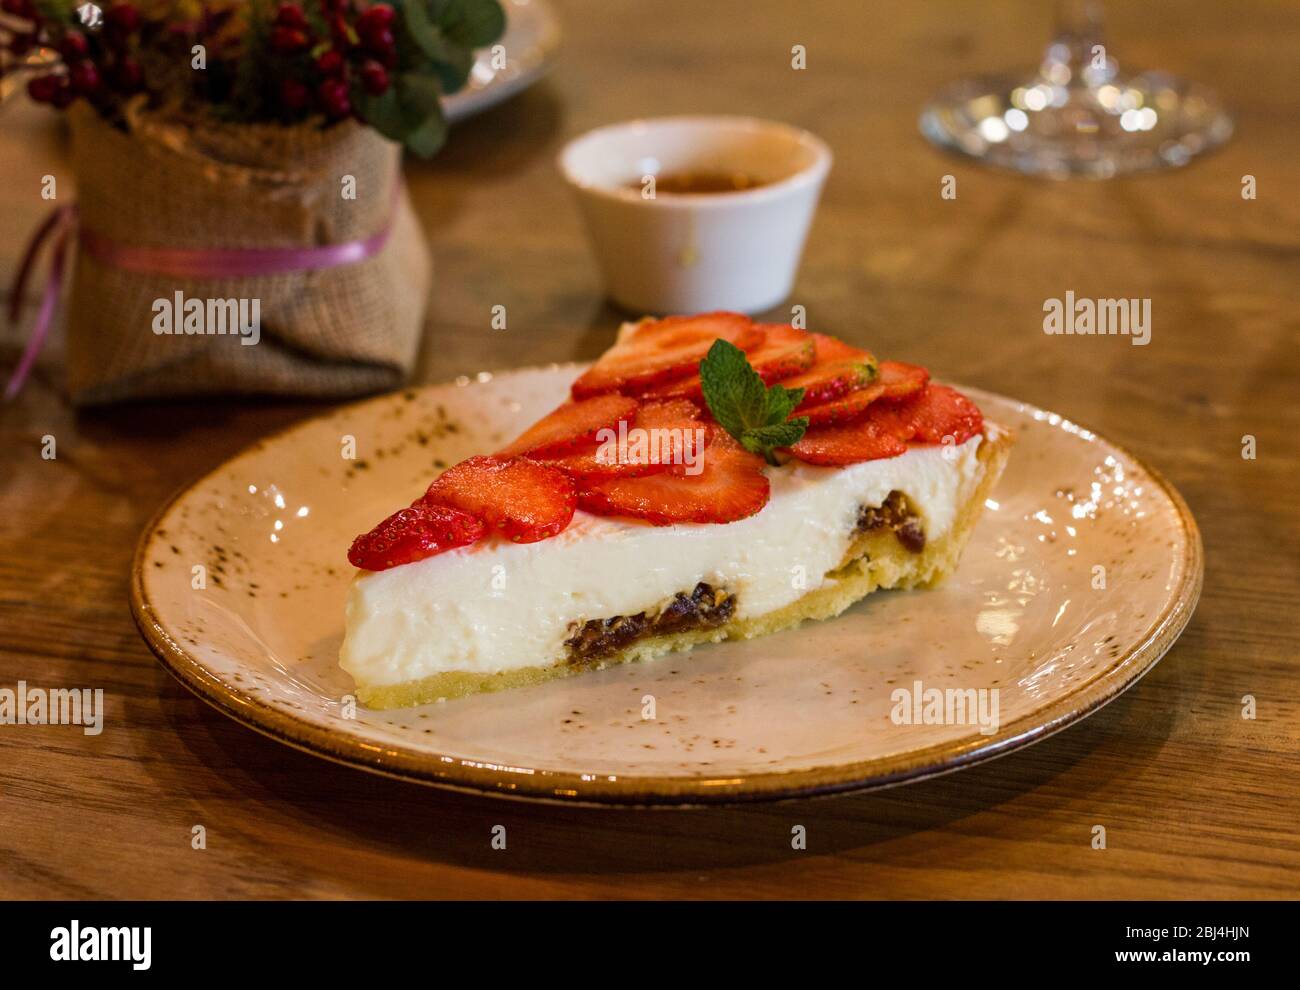 Sweet delicious dessert Stock Photo